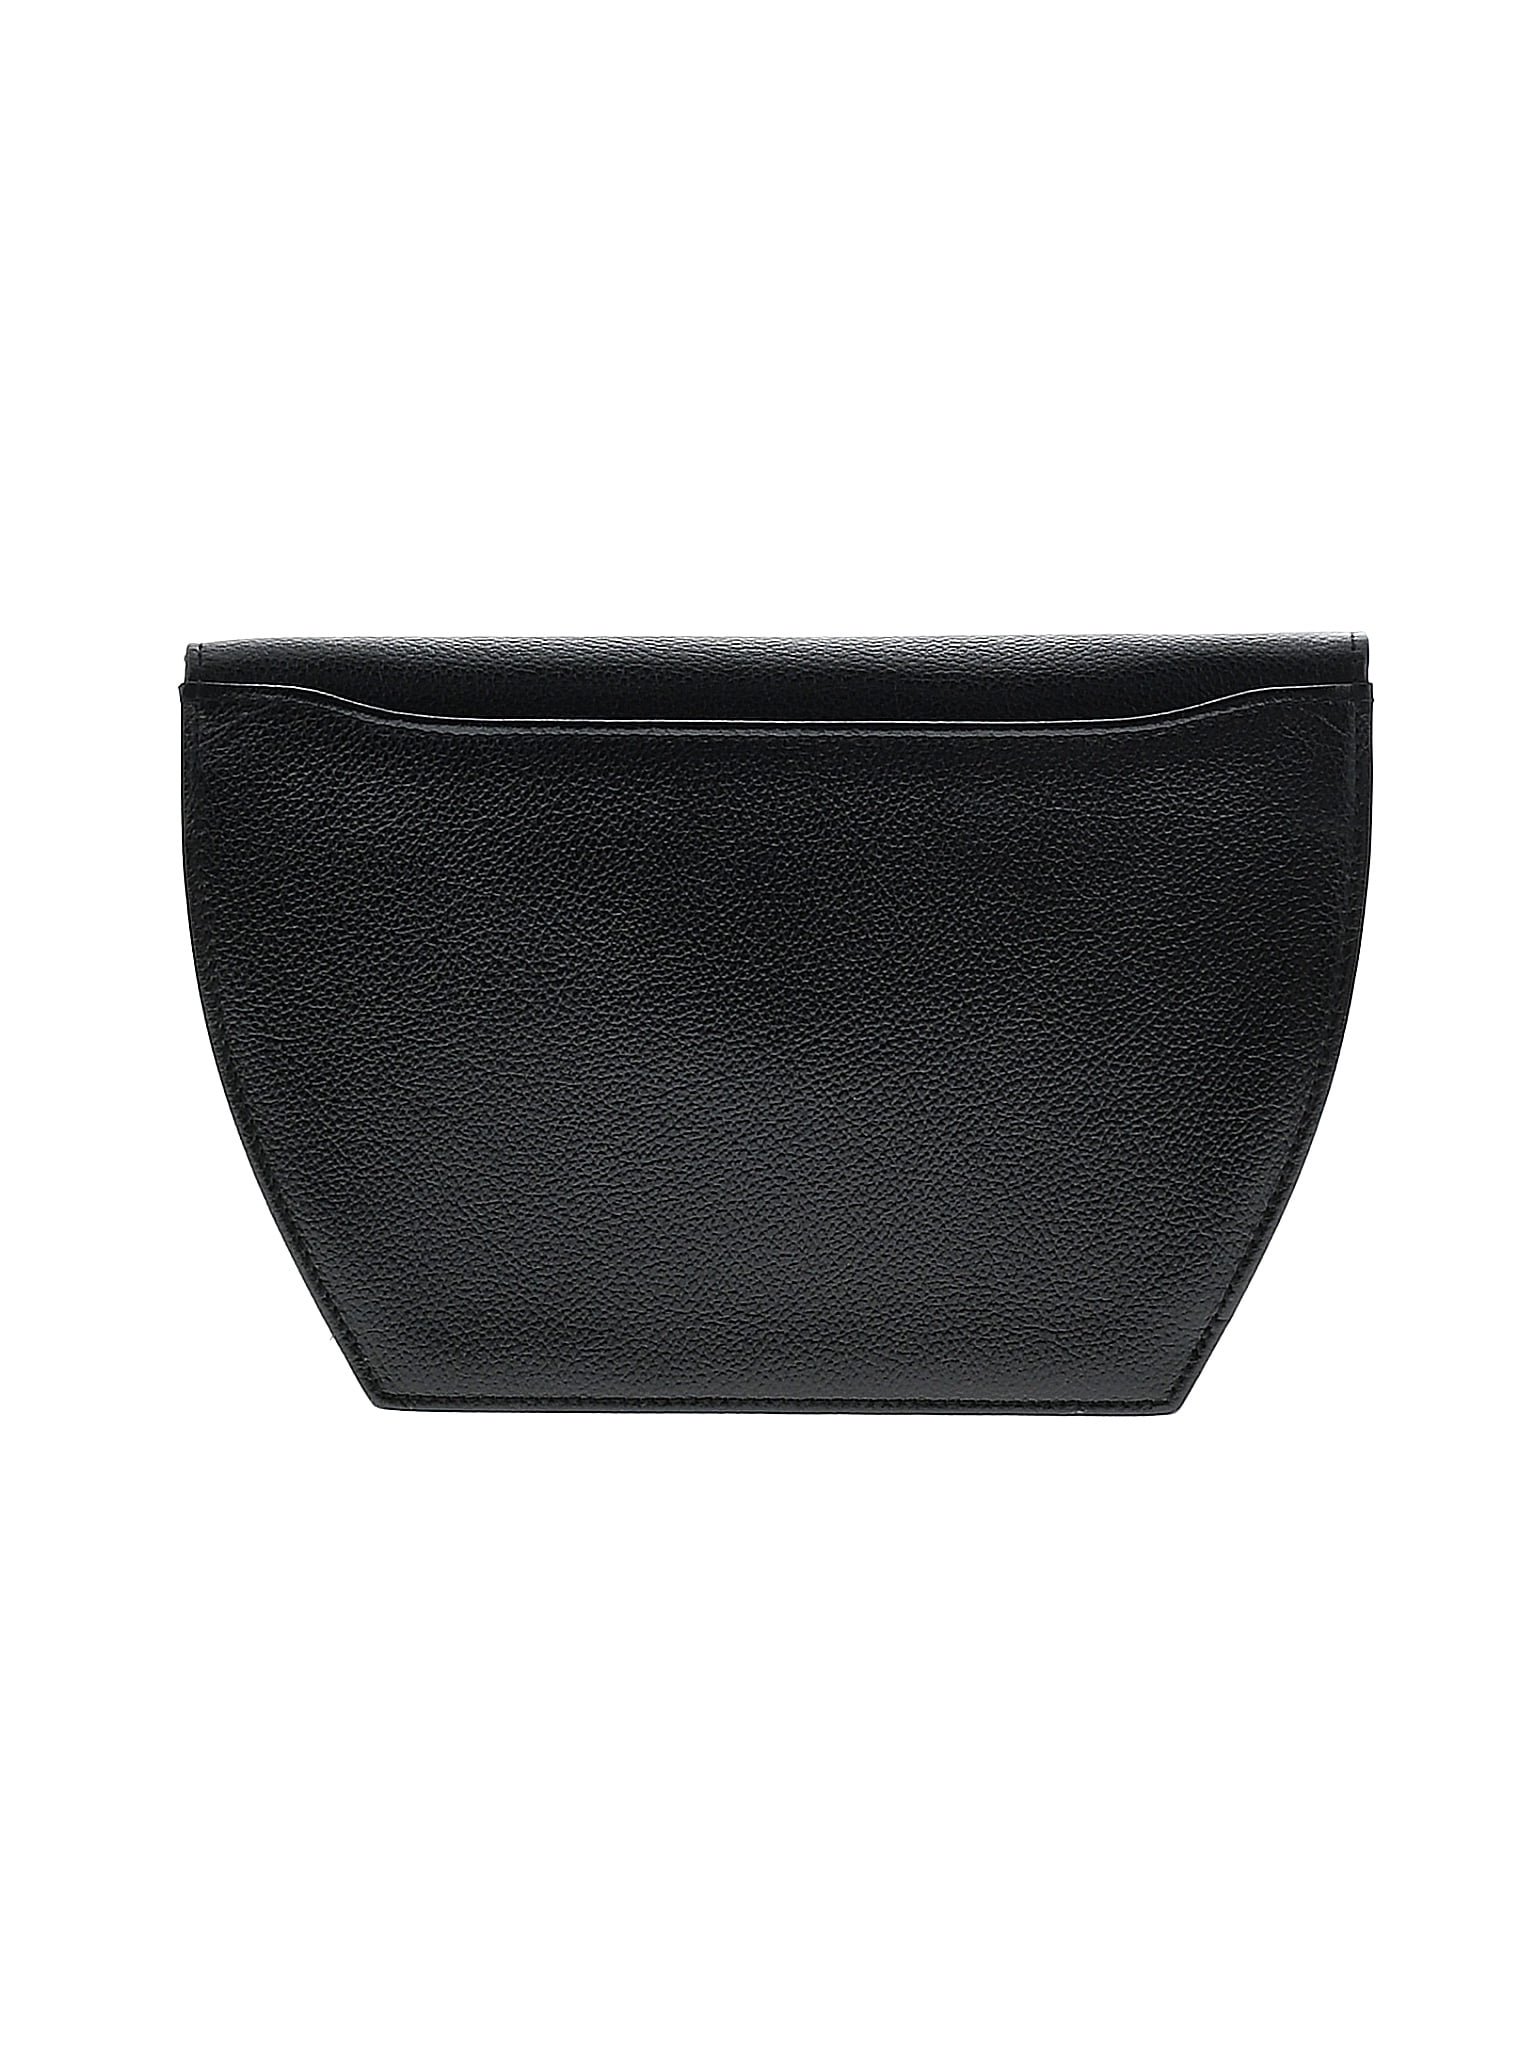 Louis Vuitton 100% Calf Leather Solid Black Ltd. Ed. Sofia Coppola Flore  Saumur One Size - 49% off